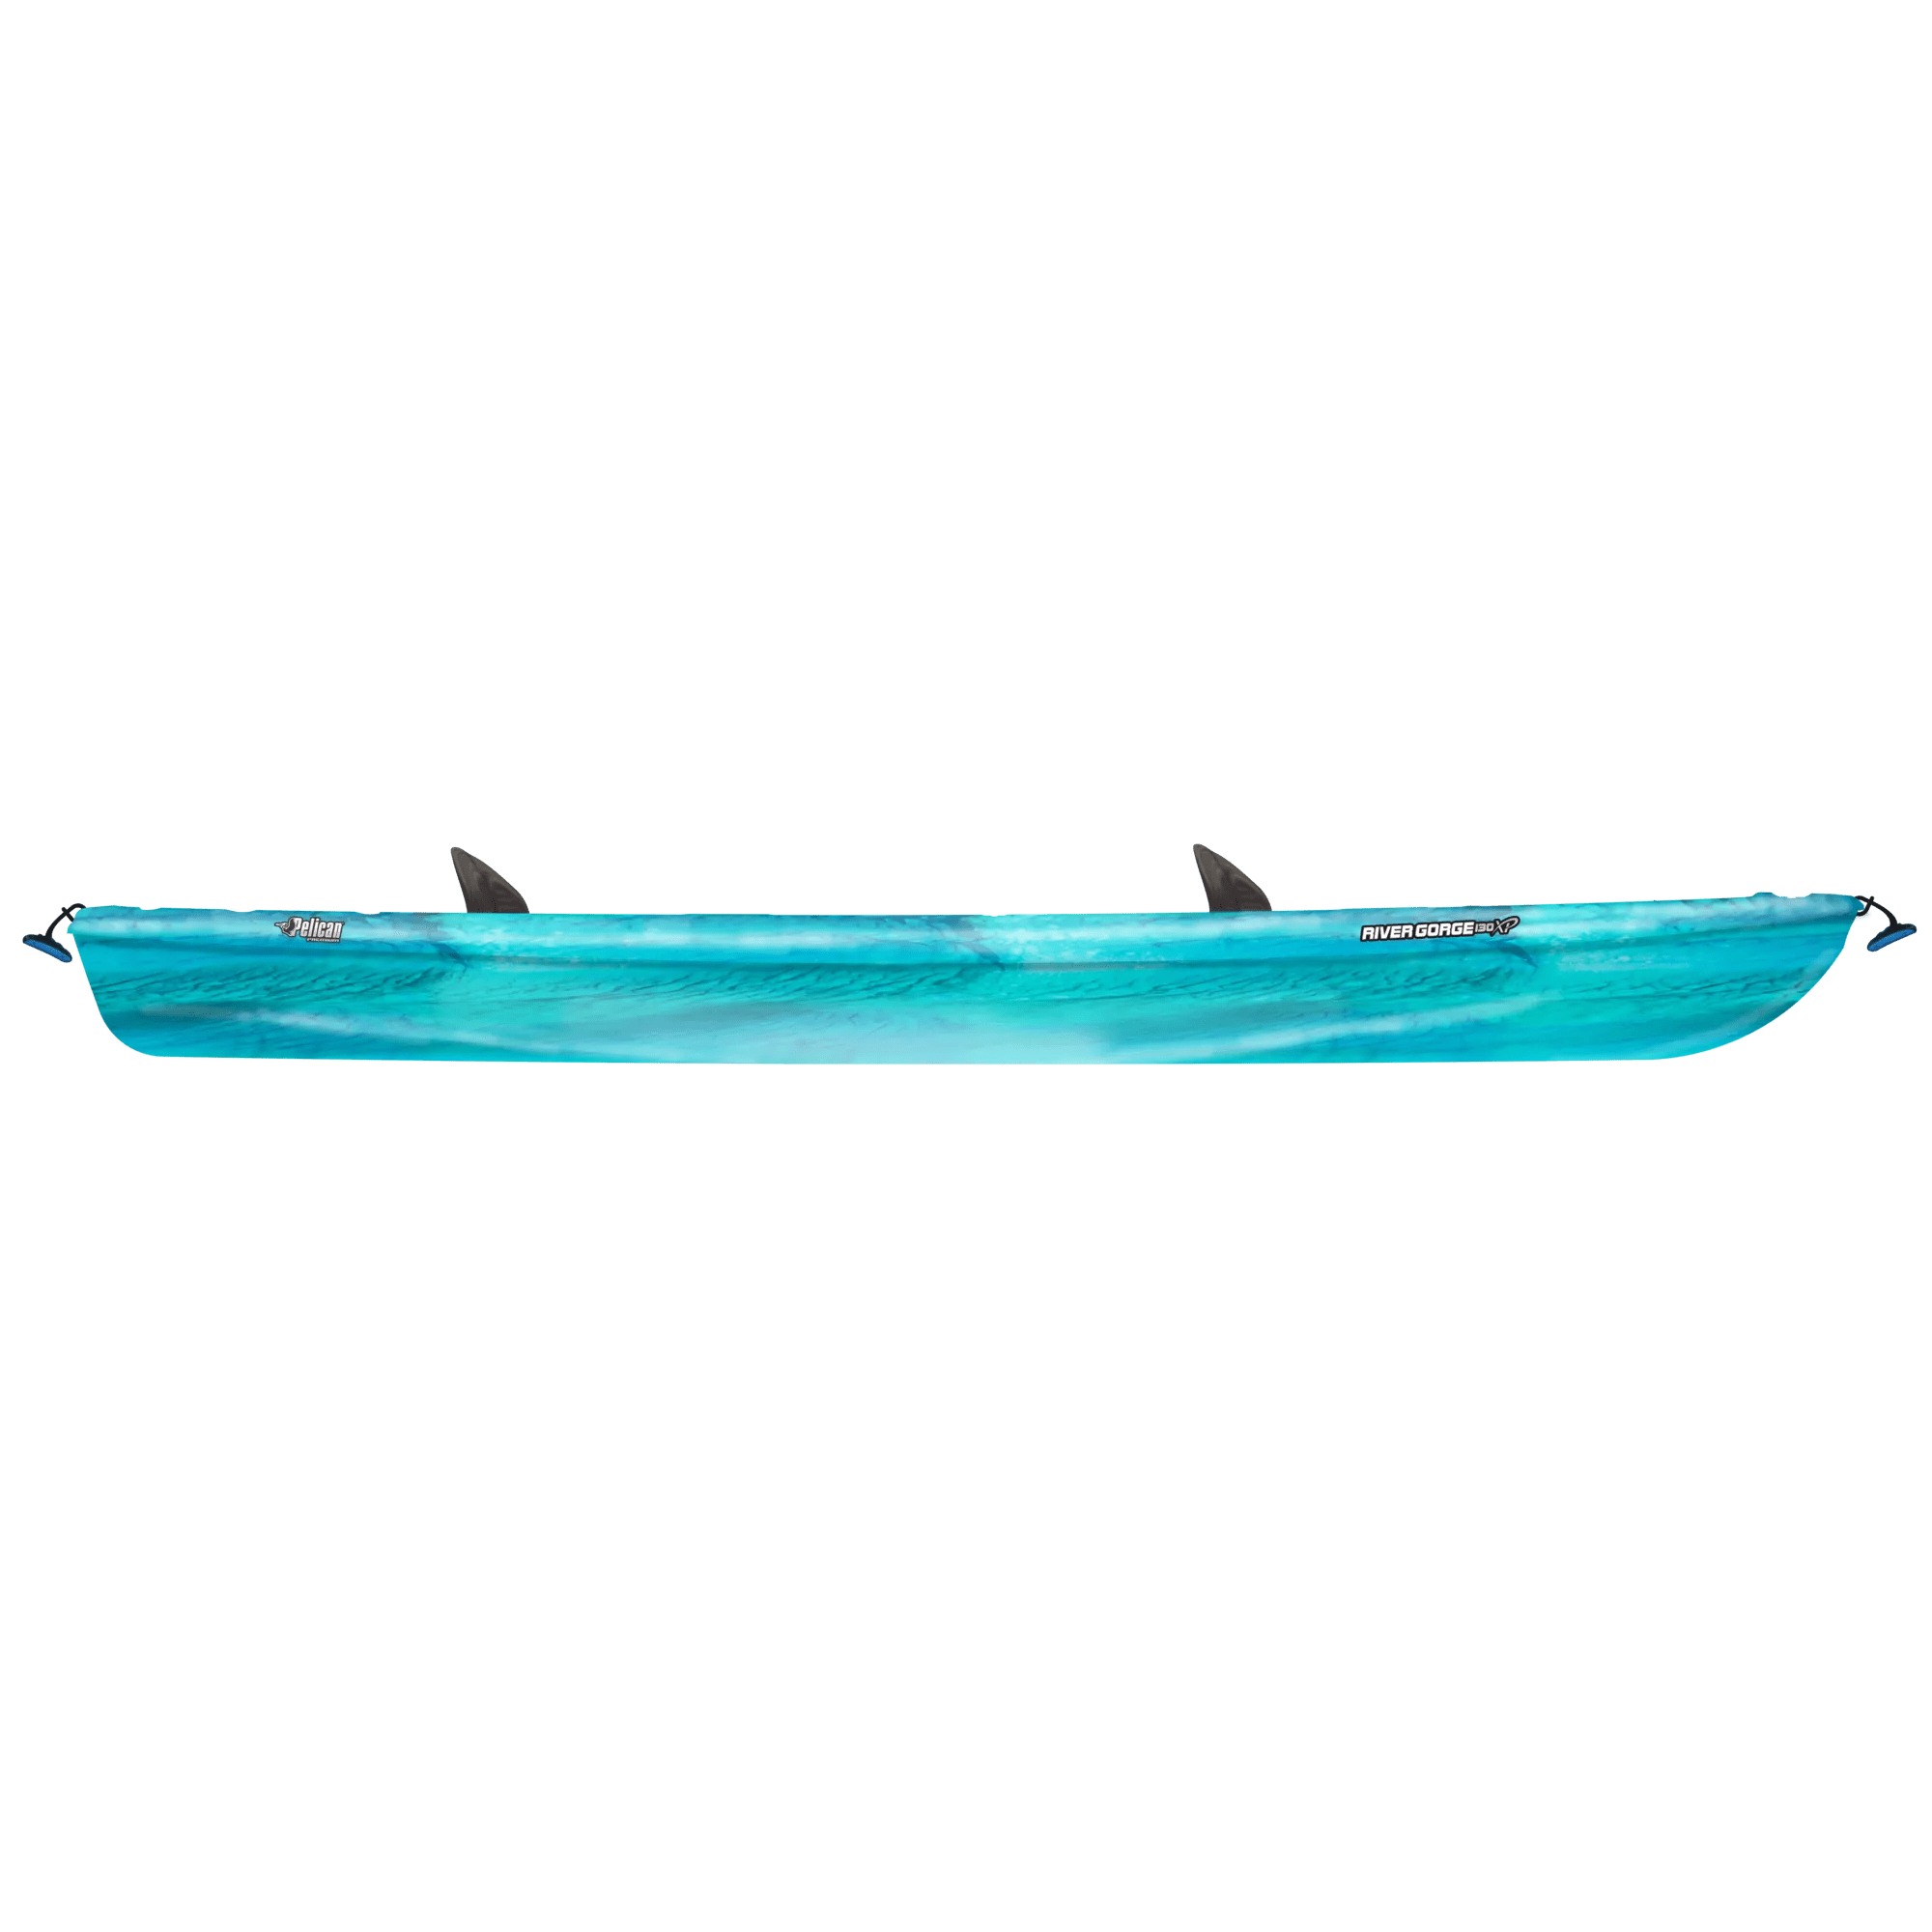 PELICAN - River Gorge 130XP Tandem Recreational Kayak - Aqua - KUF13P200-00 - SIDE